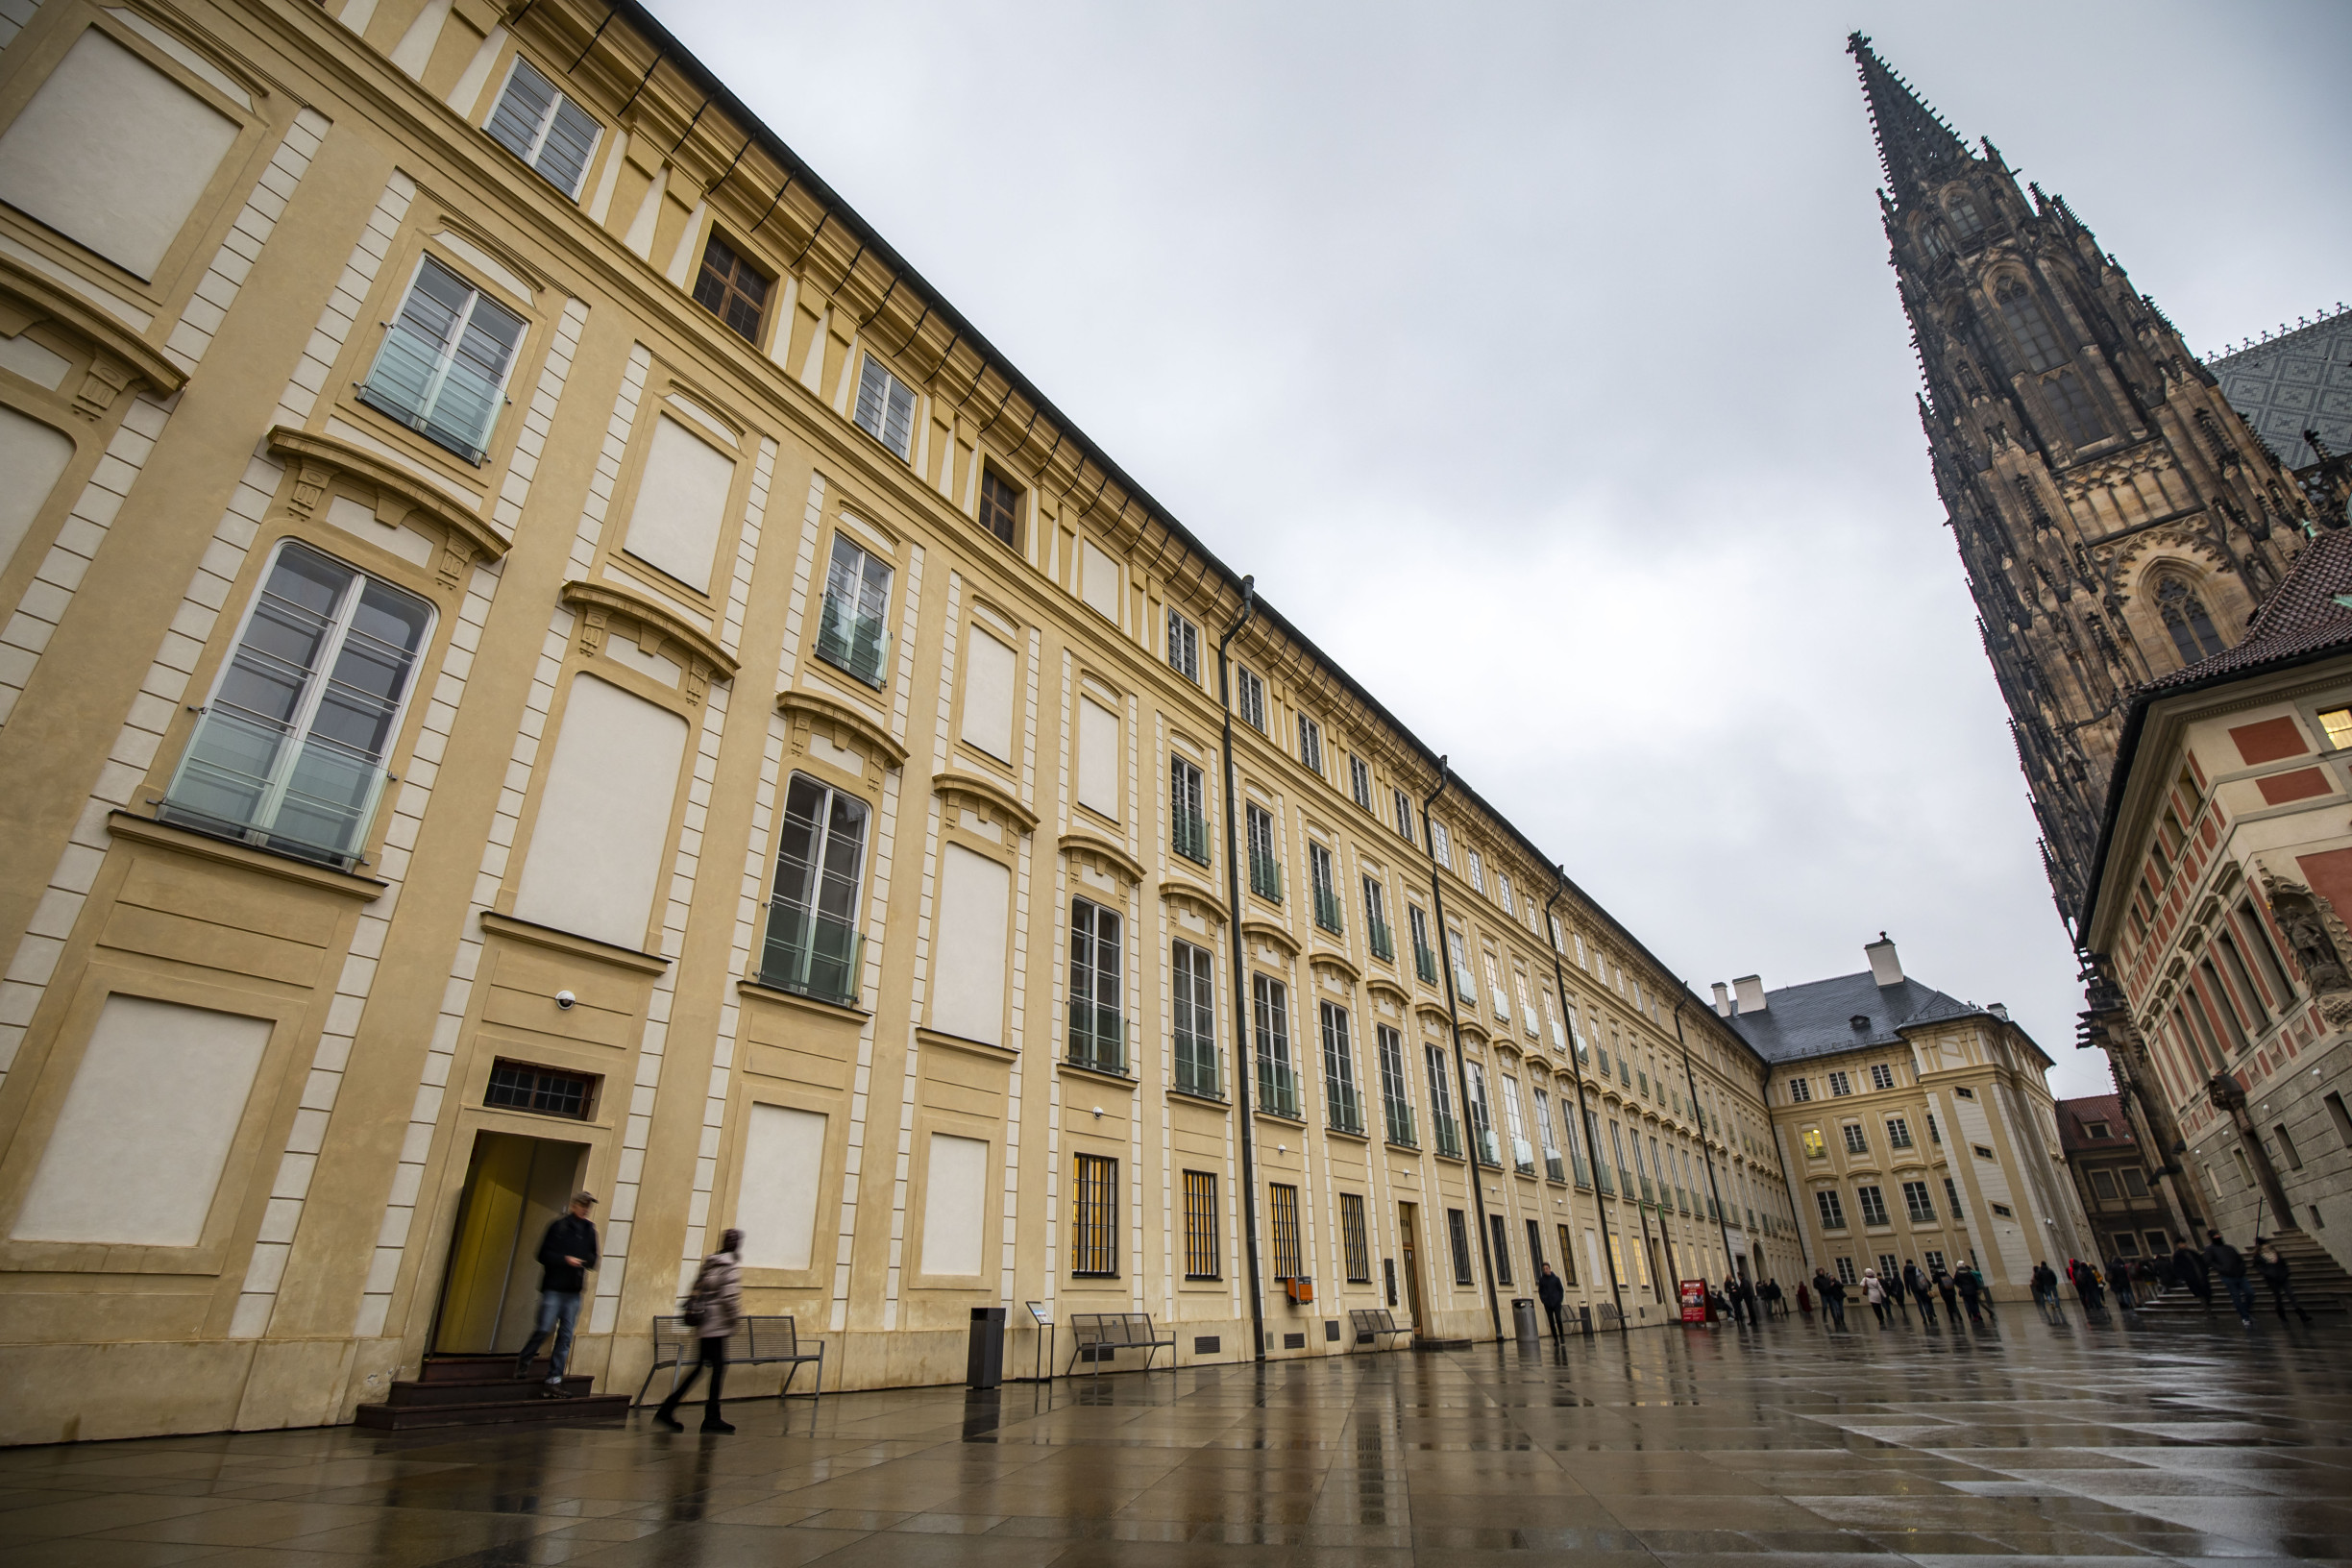 Nadbytečnost i vlastní vůle. Archiváři opouštějí Pražský hrad ve velkém